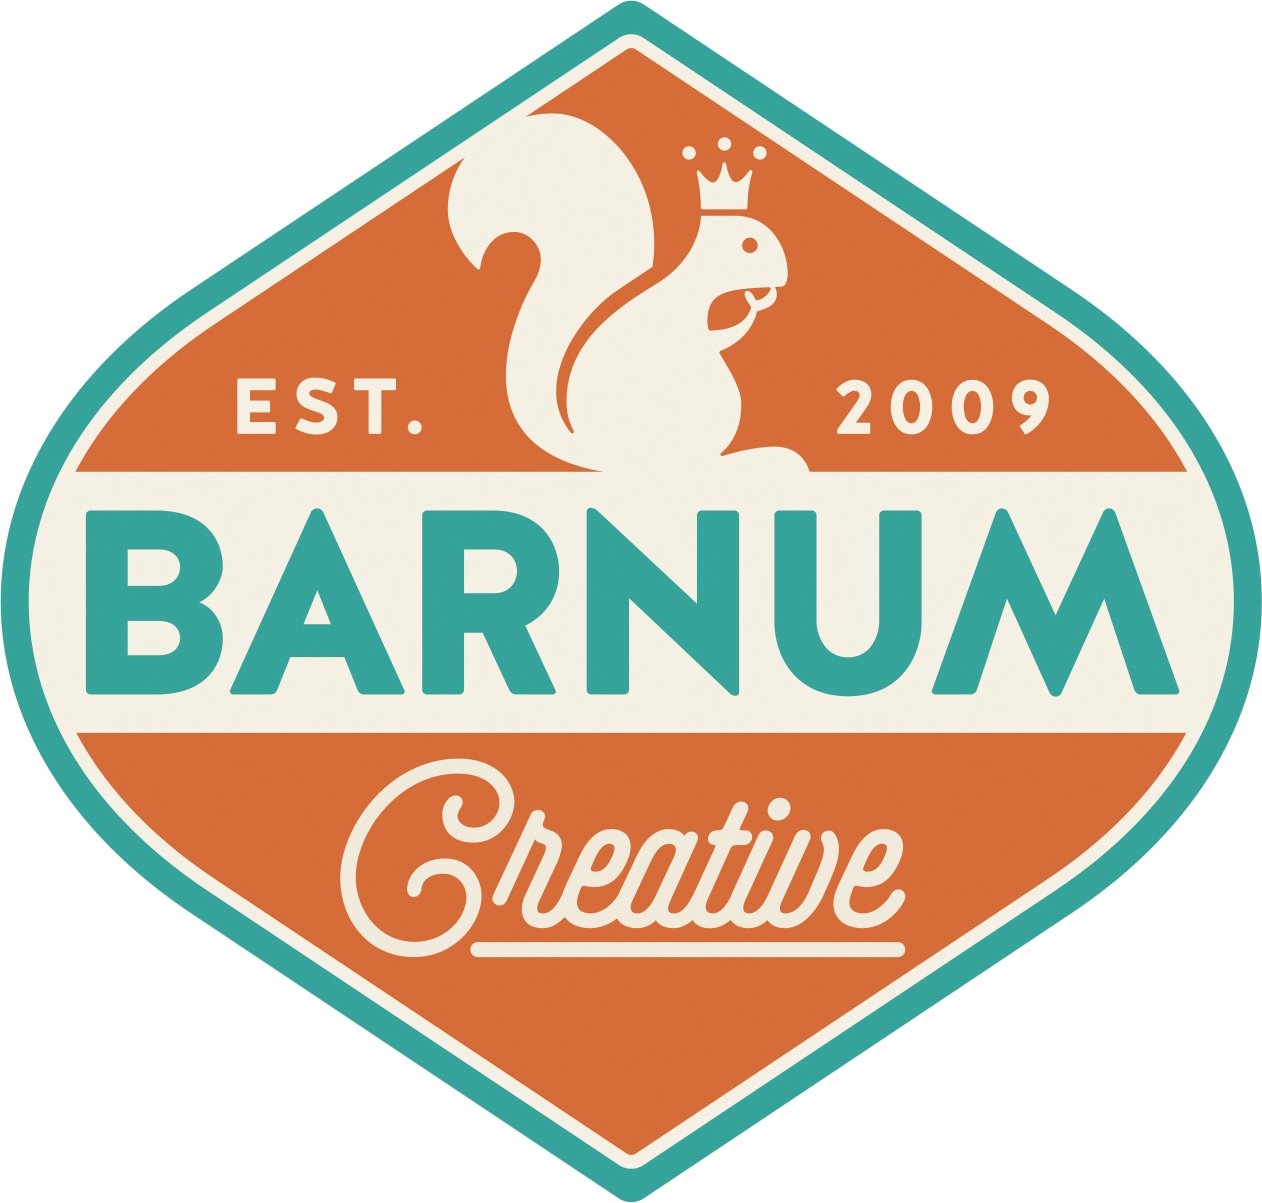 Brian Barnum Creative